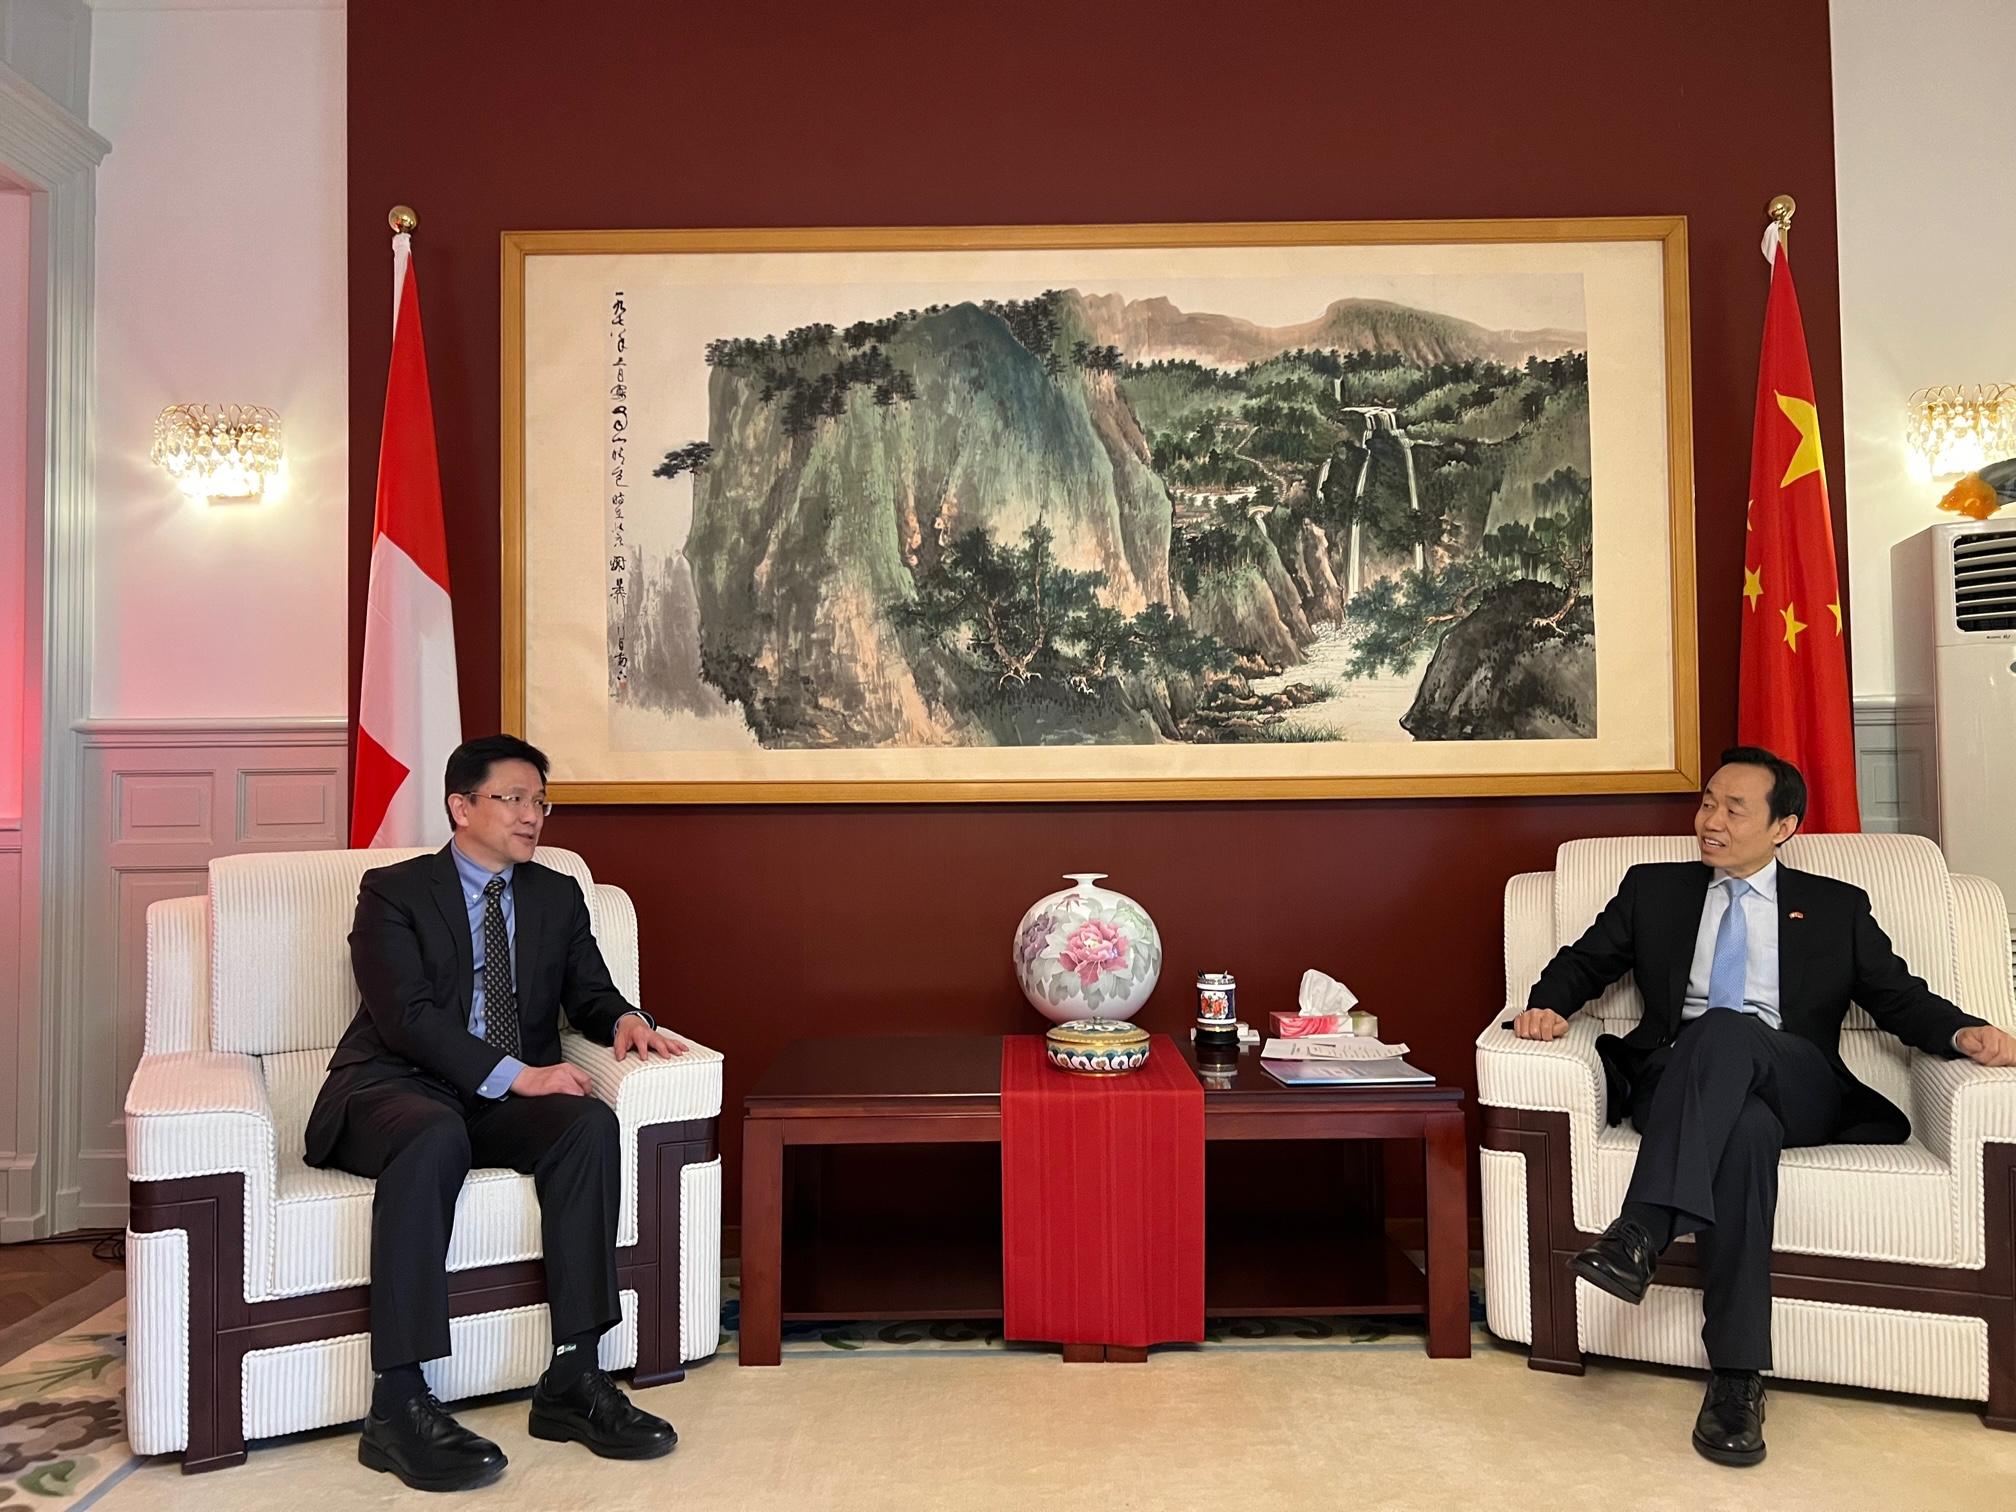 創新科技及工業局局長孫東教授（左）昨日（伯恩時間四月二十七日）在瑞士伯恩拜會中國駐瑞士大使王世廷（右），並向他介紹香港創科發展的最新情況。